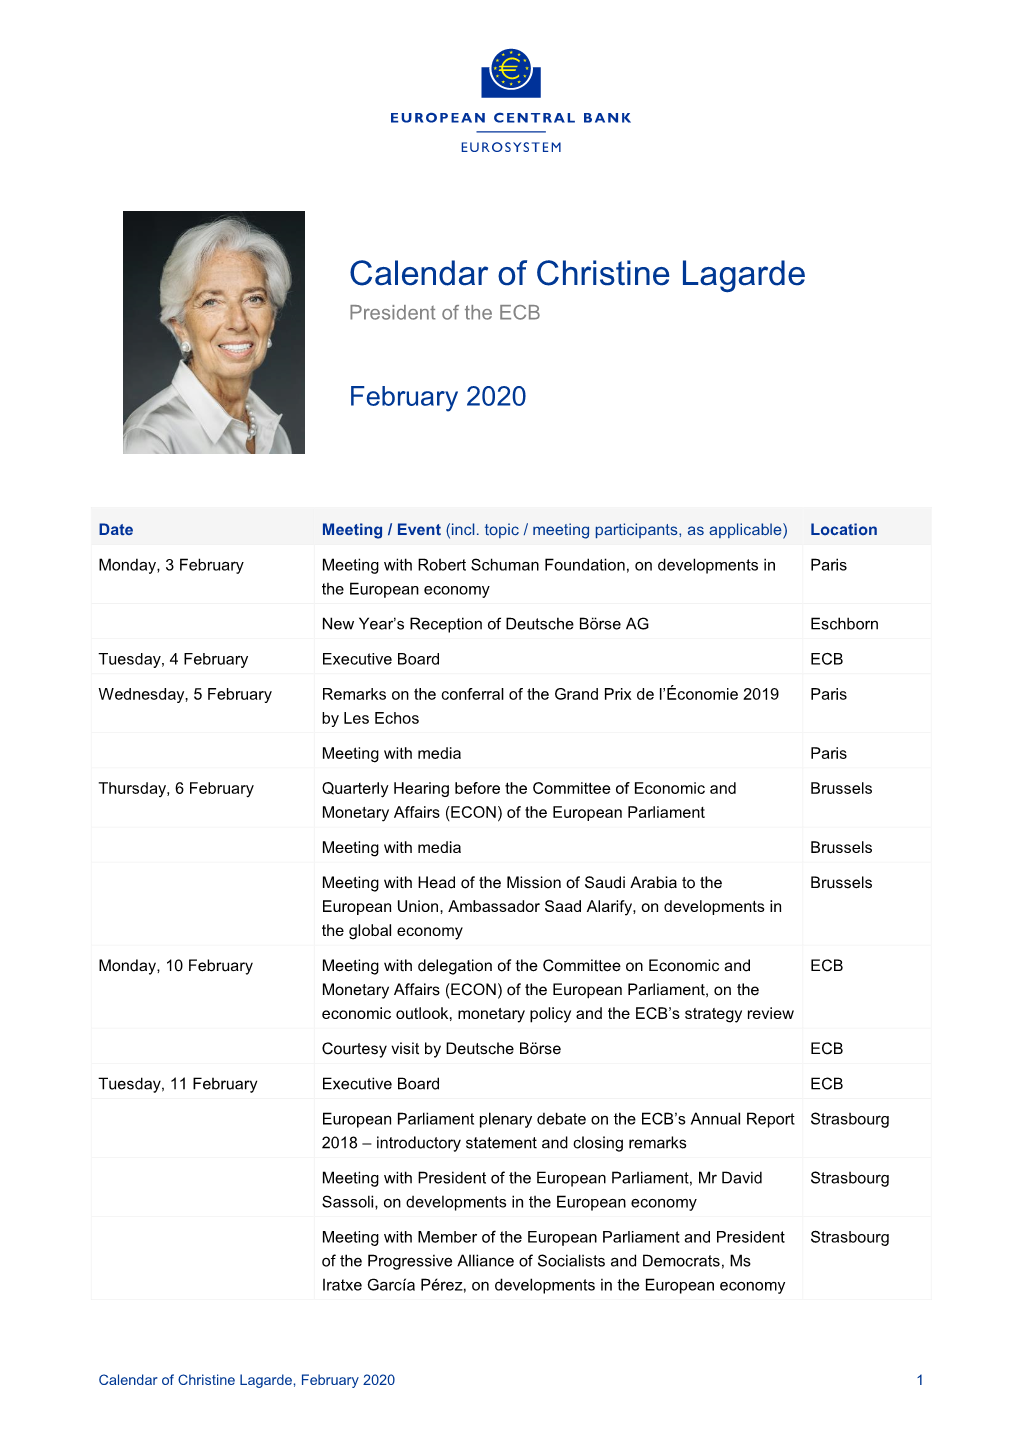 Calendar of Christine Lagarde, February 2020 1 Thursday, 13 February Courtesy Visit by Former ECB Vice-President, Mr Christian Noyer ECB